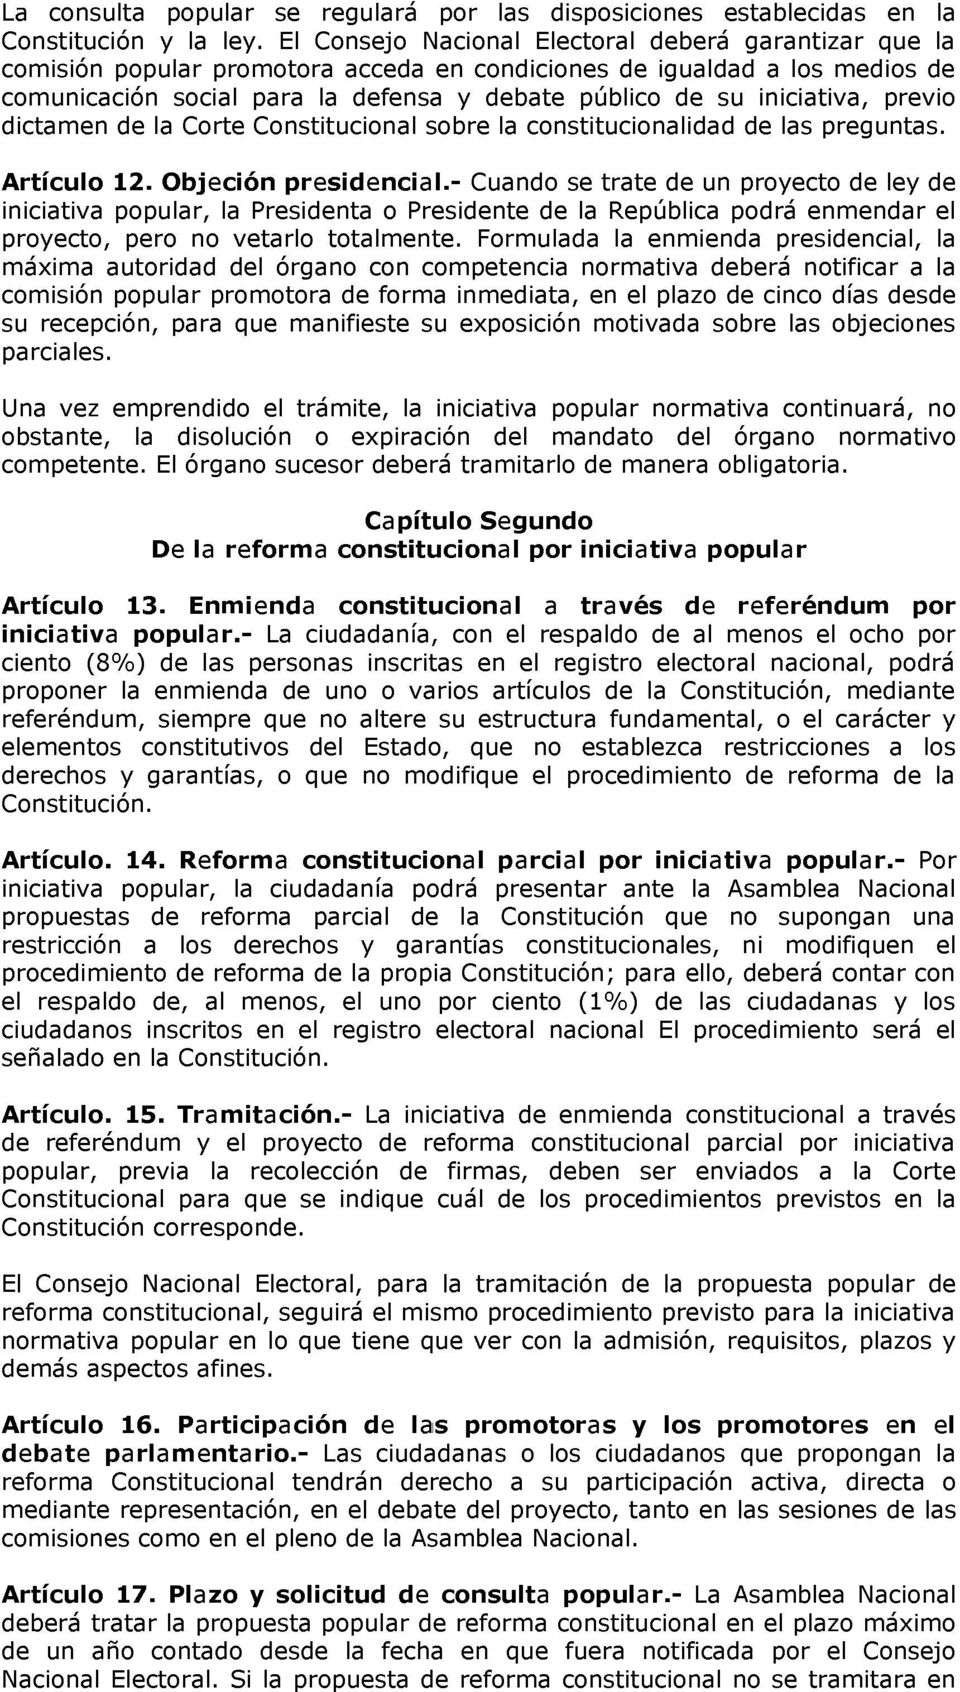 iniciativa, previo dictamen de la Corte Constitucional sobre la constitucionalidad de las preguntas. Artículo 12. Objeción presidencial.